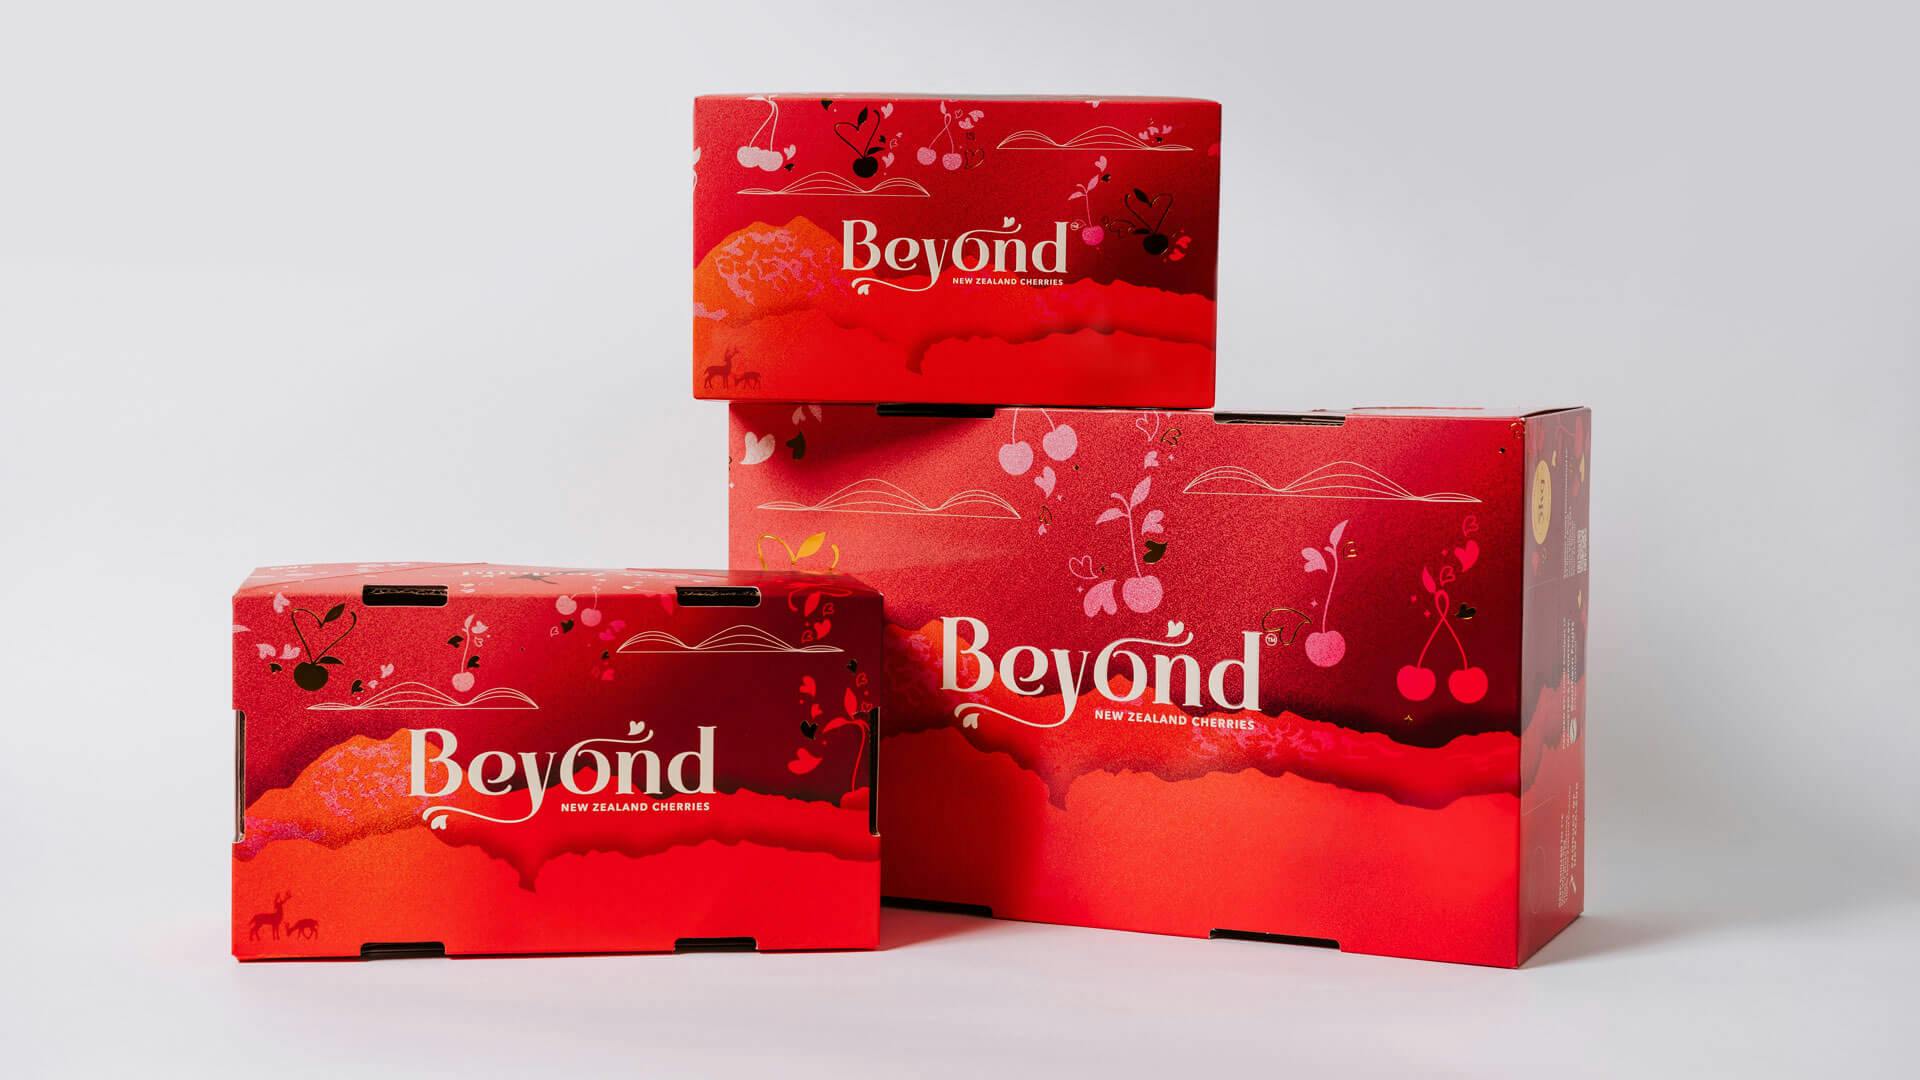 firebrand beyond cherries packaging design